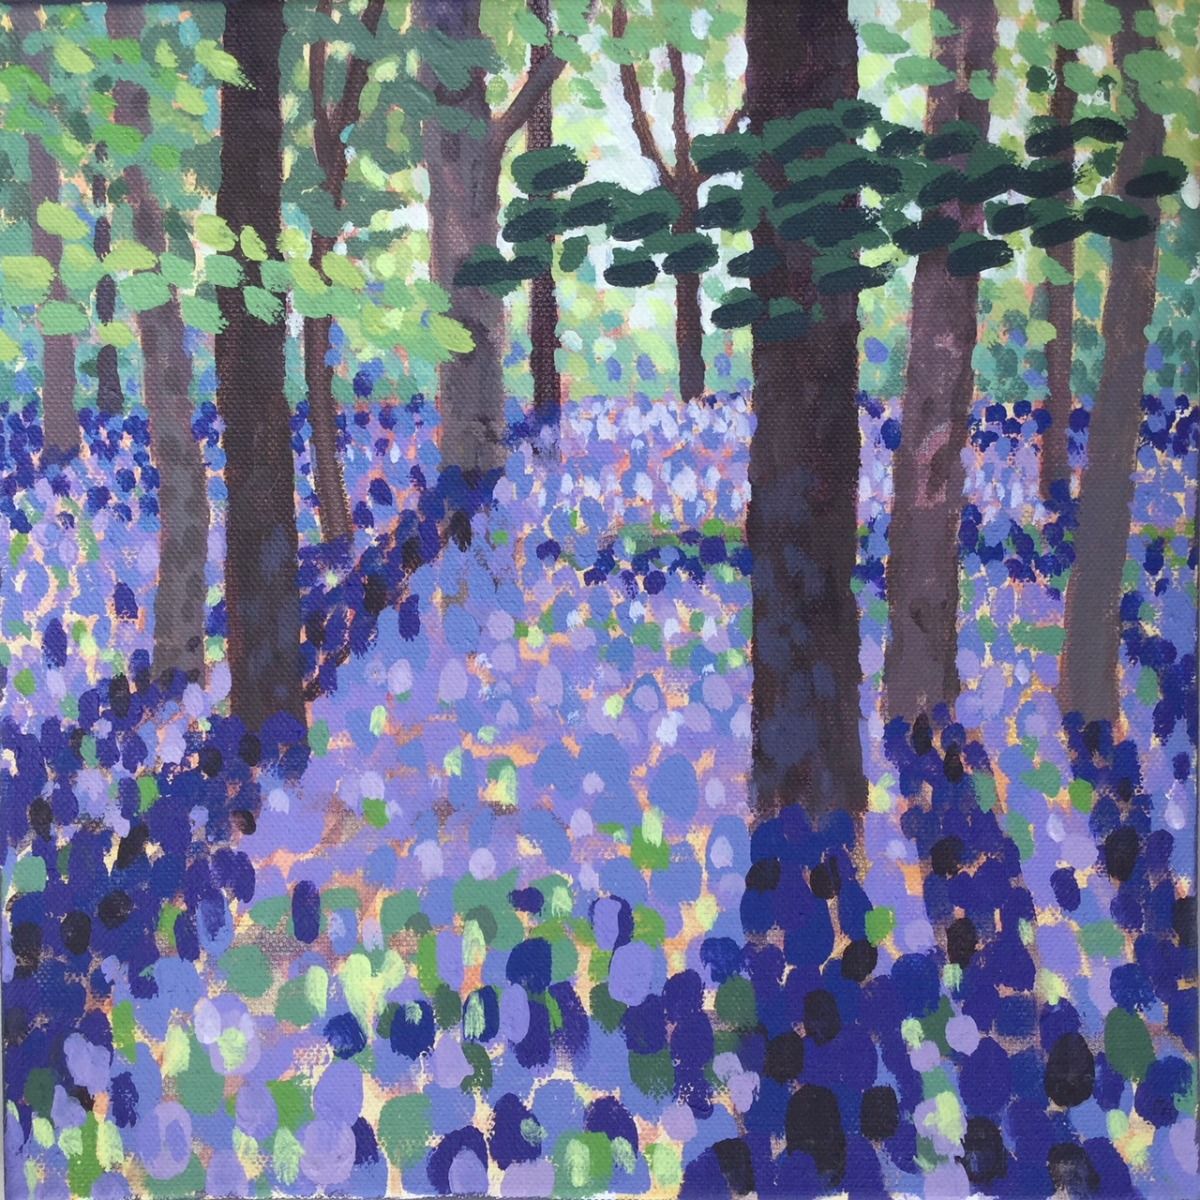 Bluebell Woods 1 by Rosemary Farrer